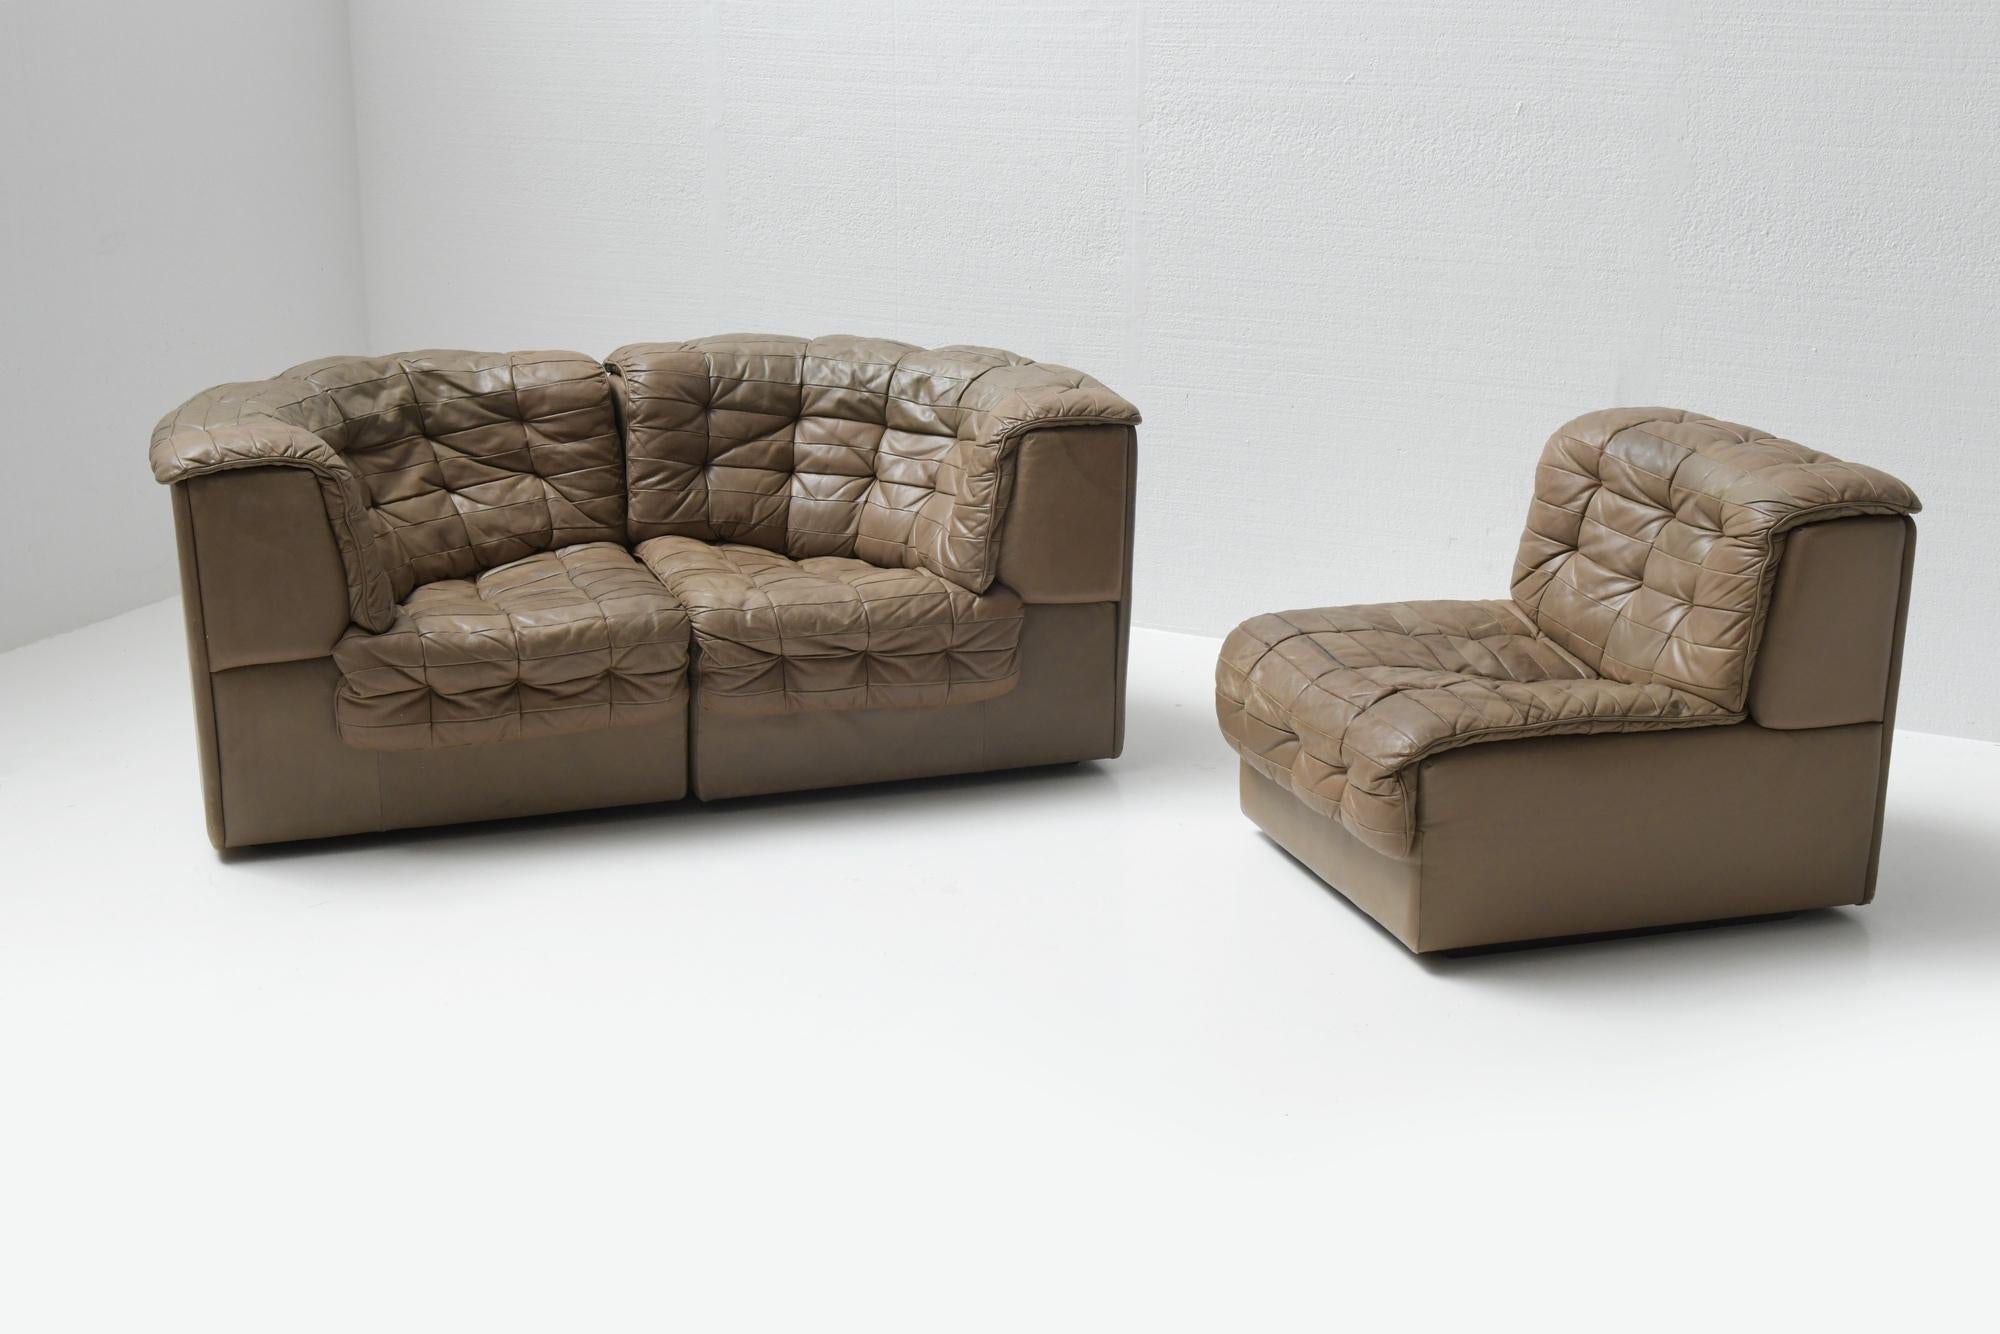 Ds 11 Modular Sofa in Brown Patchwork Leather by De Sede Team for De Sede Swiss In Good Condition For Sale In Buggenhout, Oost-Vlaanderen